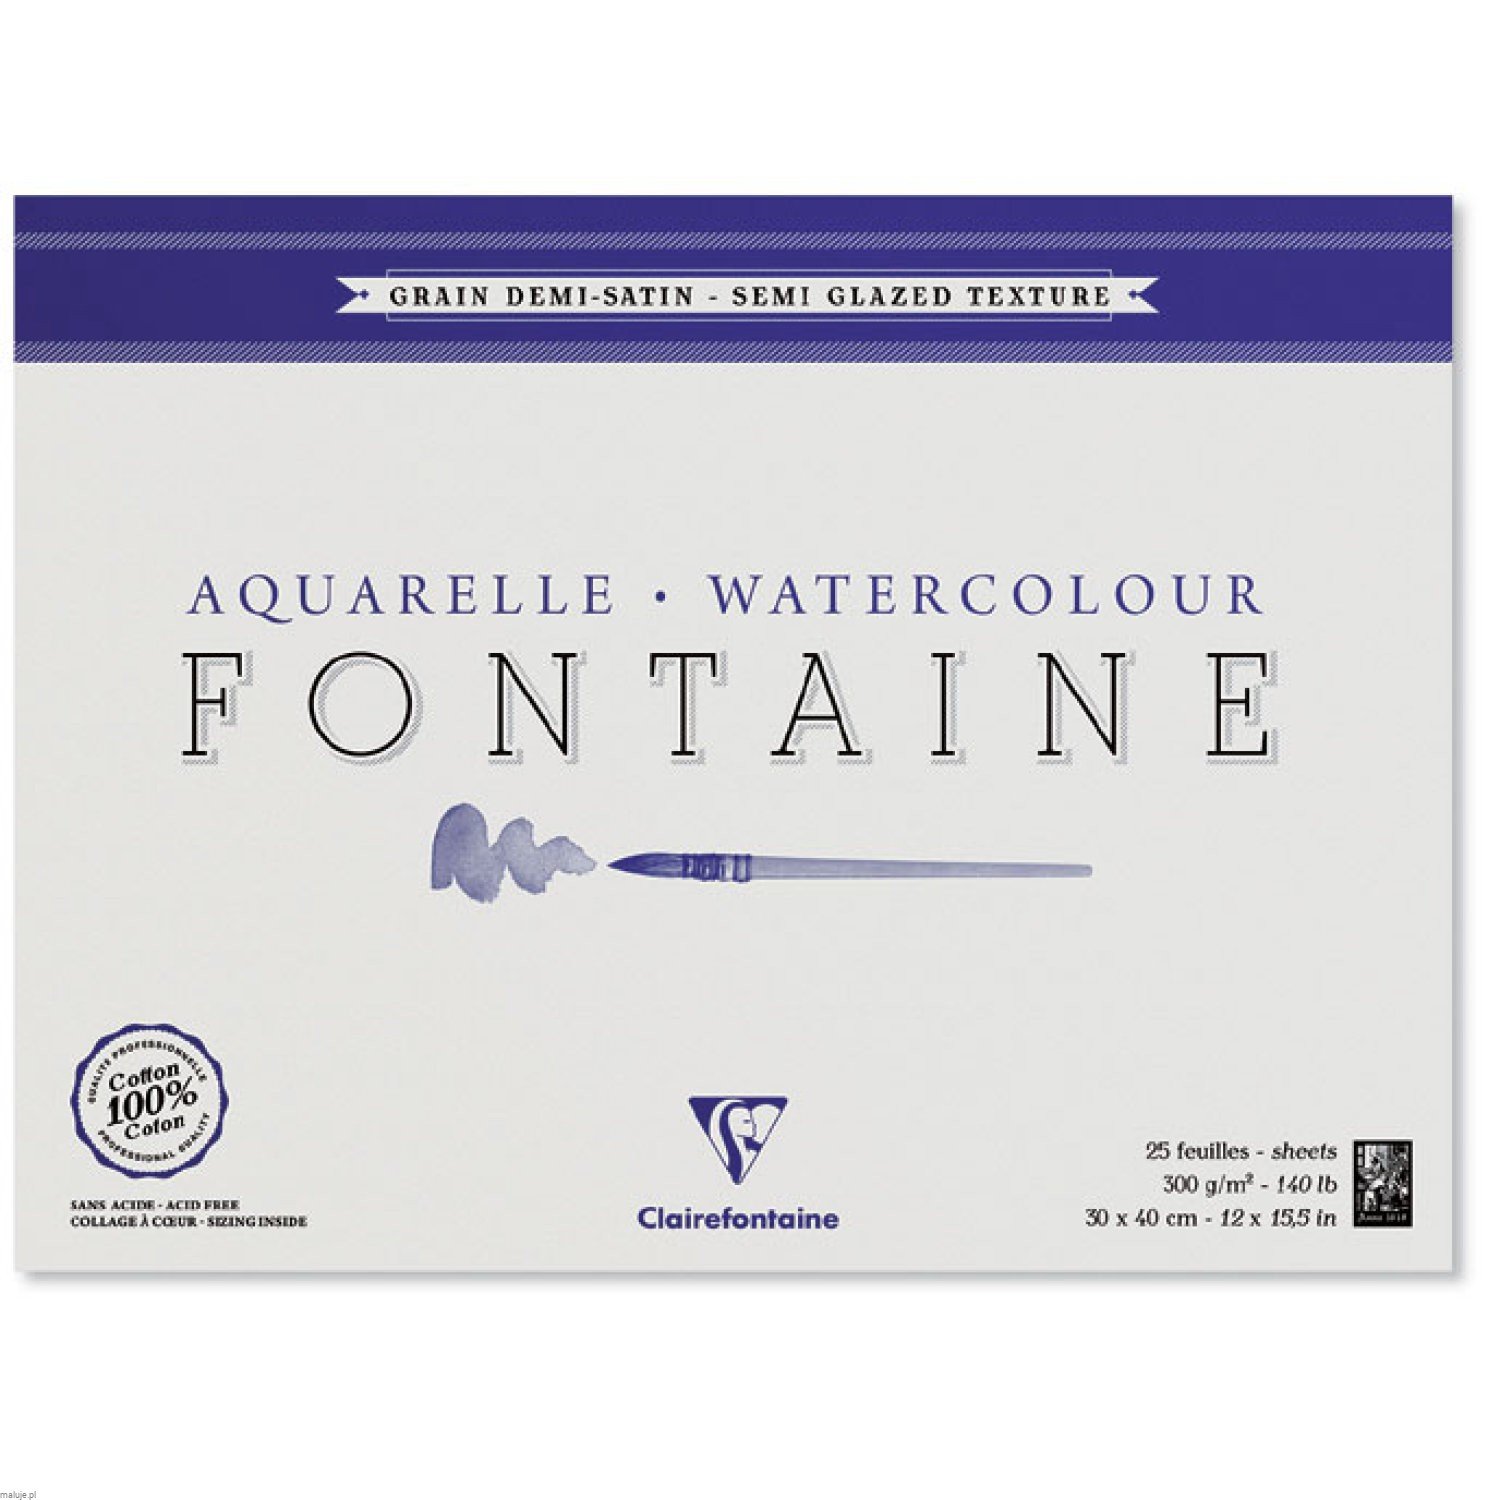 Clairefontaine "Fontaine" 300g 25ark SEMI GLAZED 100% bawełna - blok akwarelowy